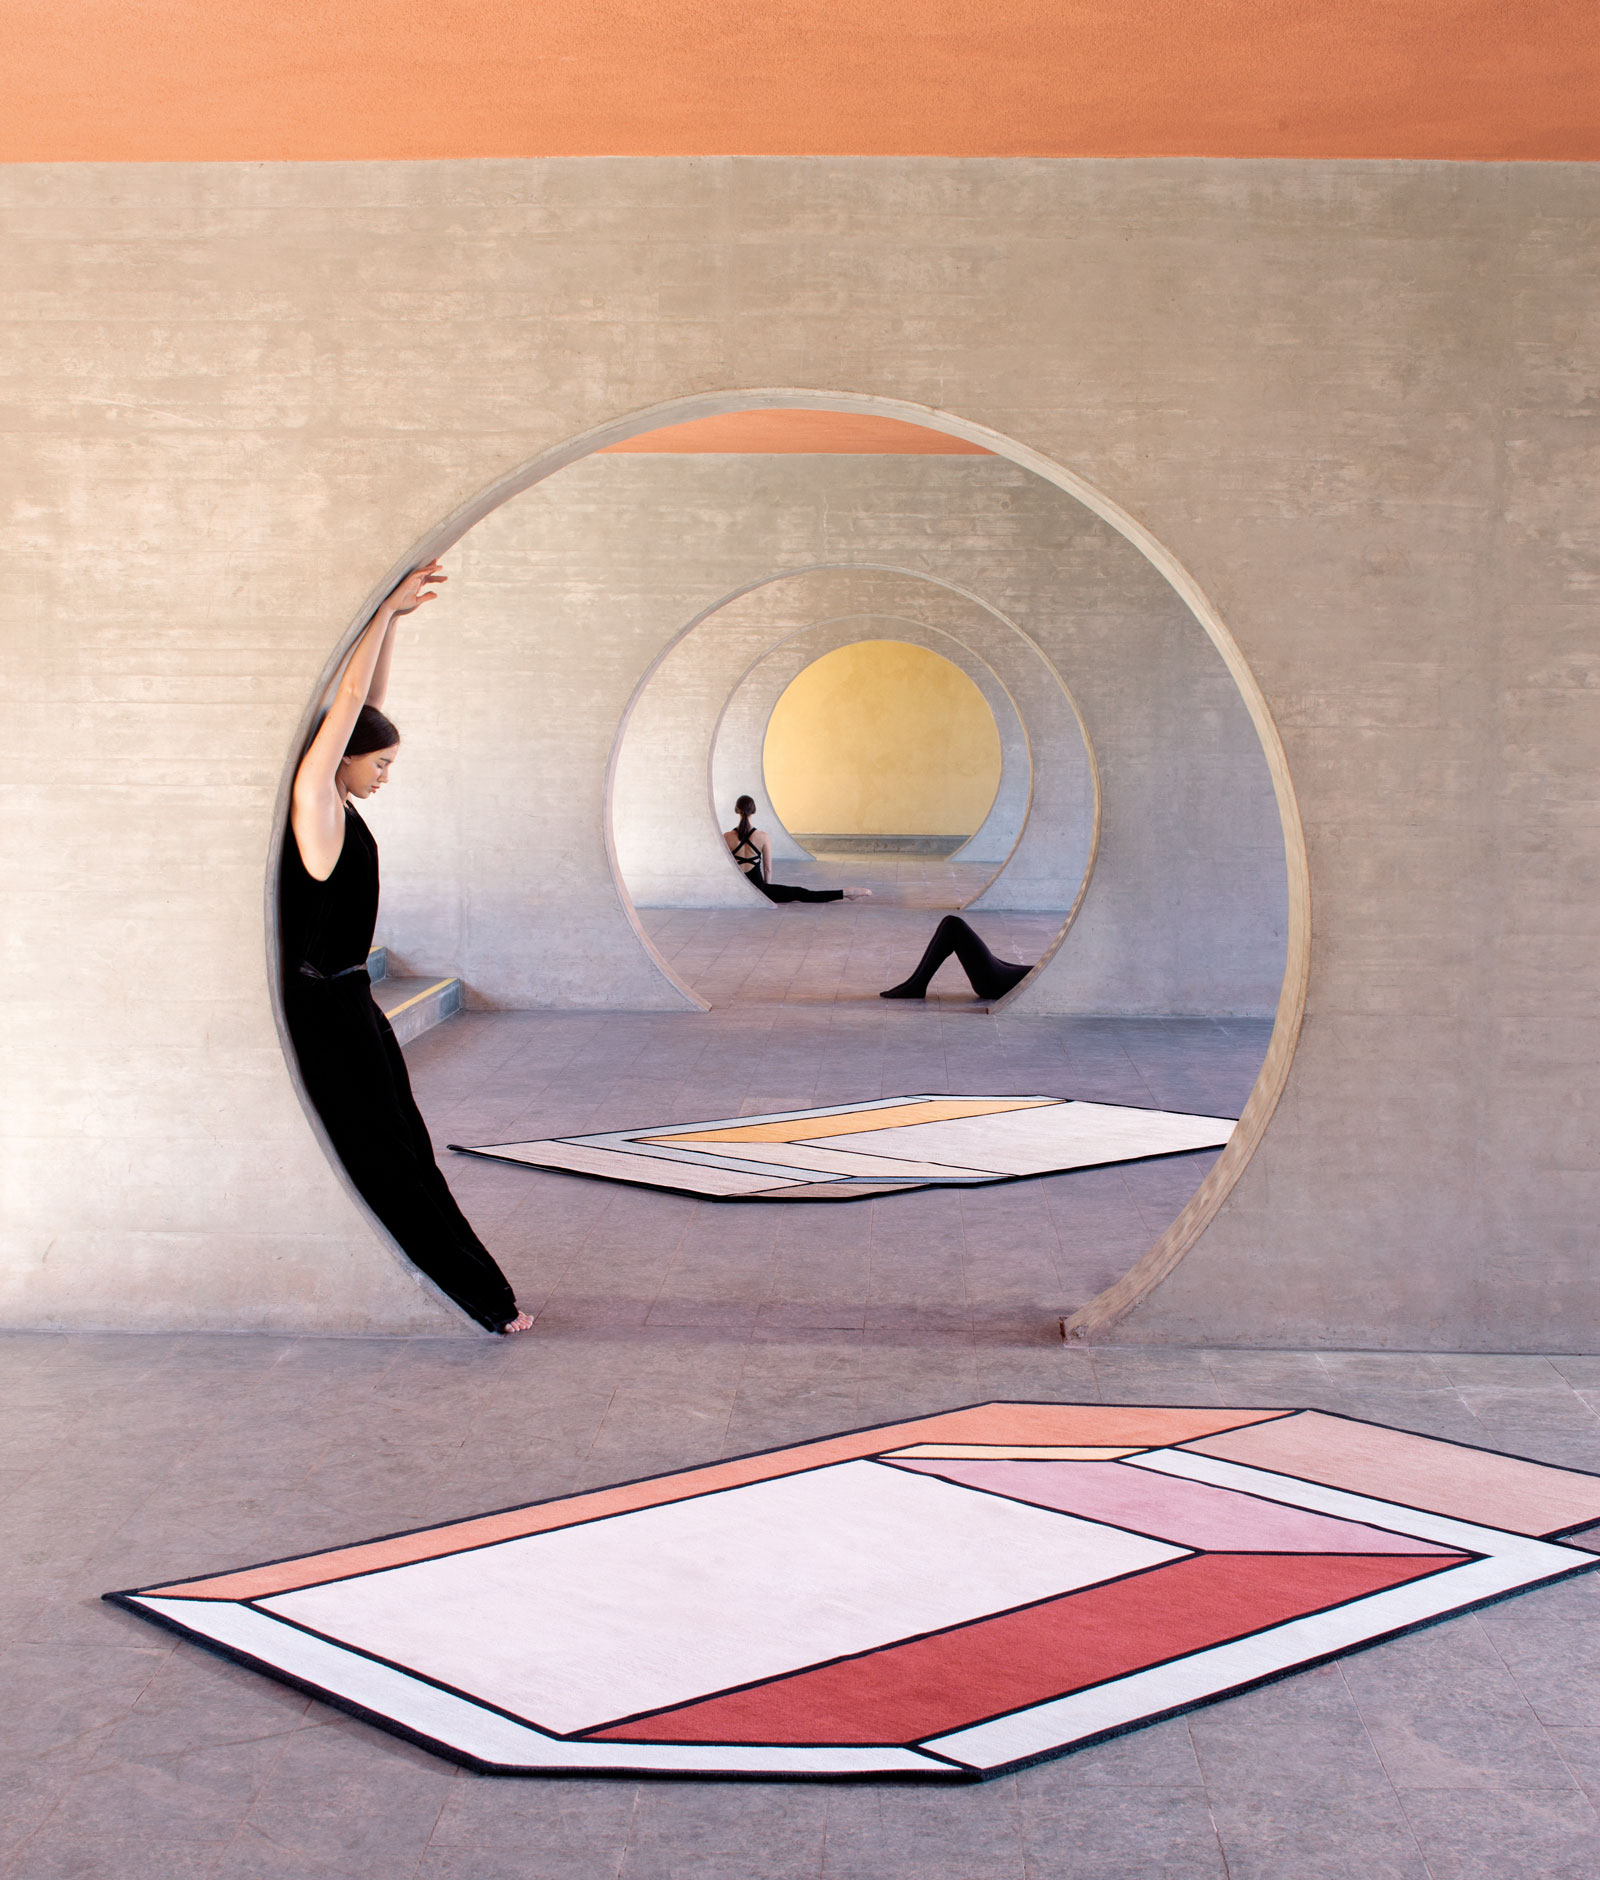 Visioni rug designed by Patricia Urquiola